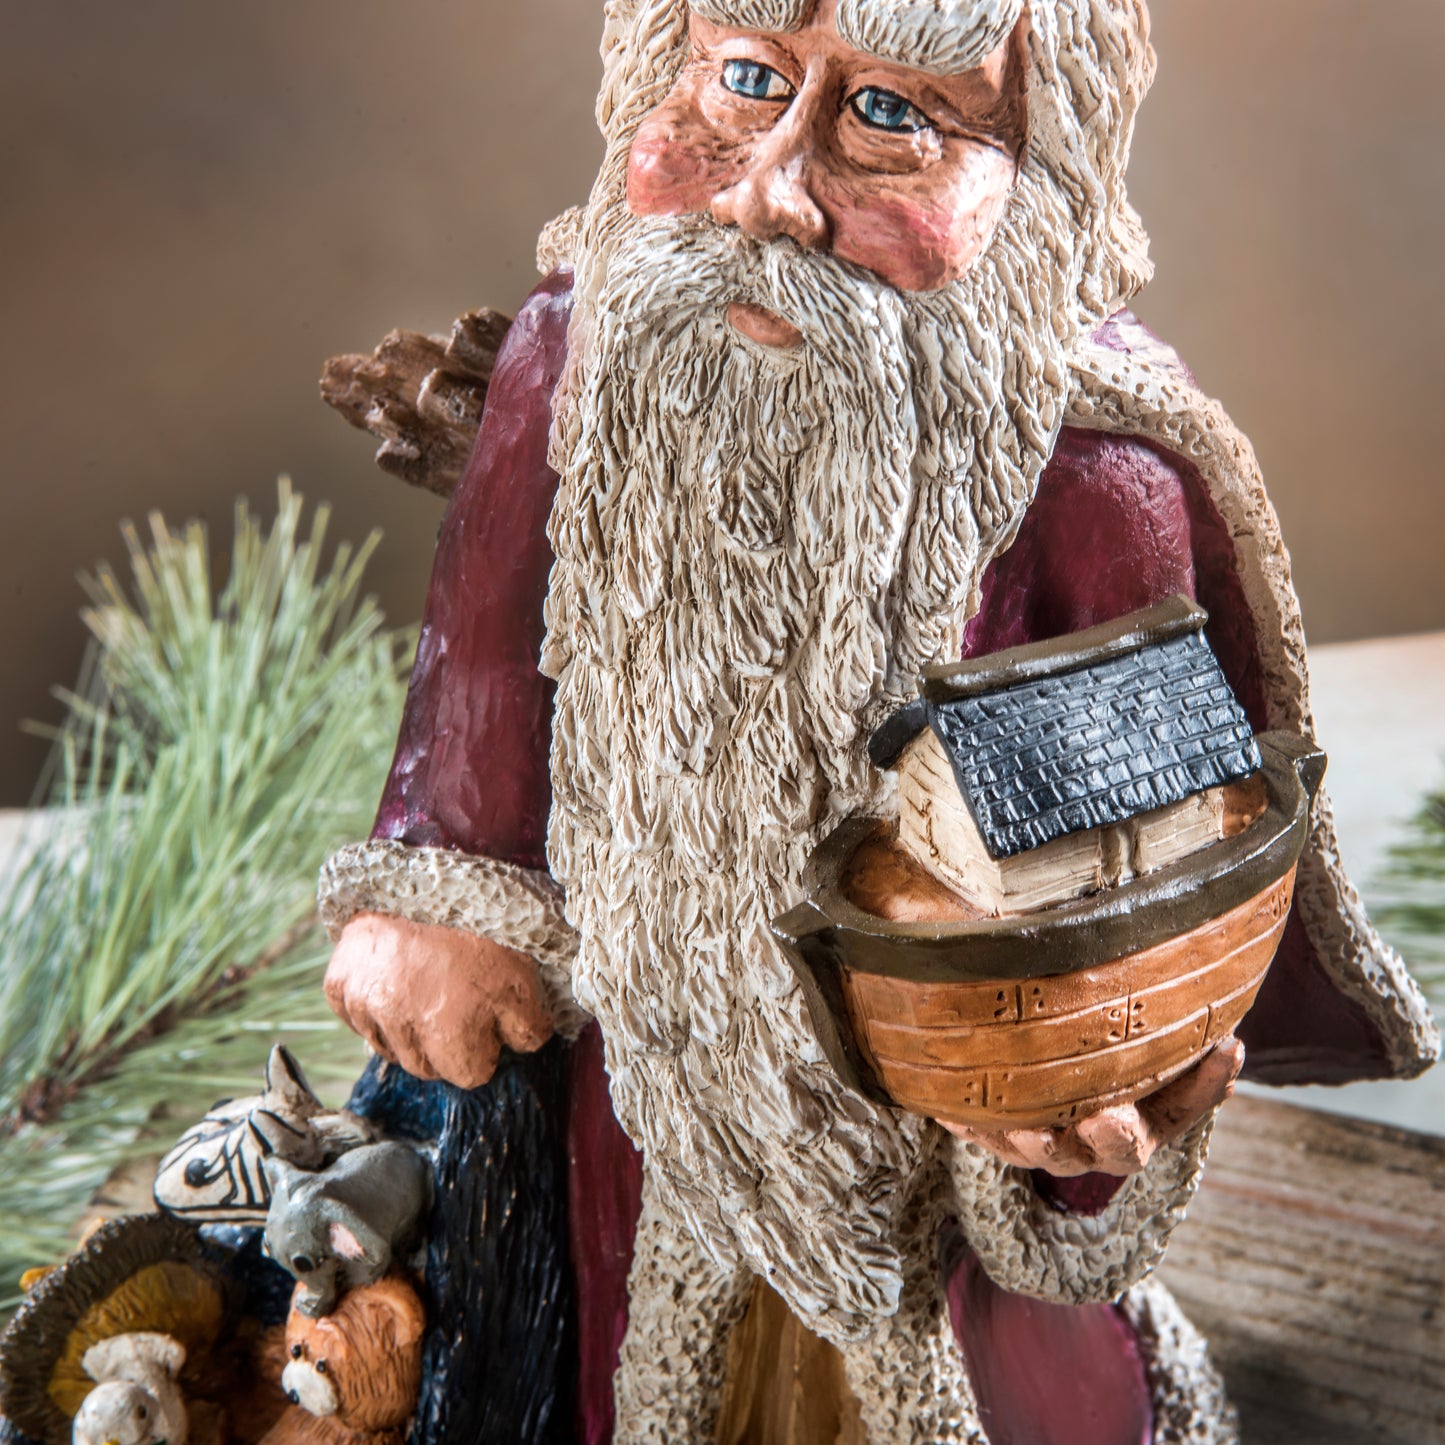 Noah Santa Figurine By Bert Anderson MB 32 (Baf 104)